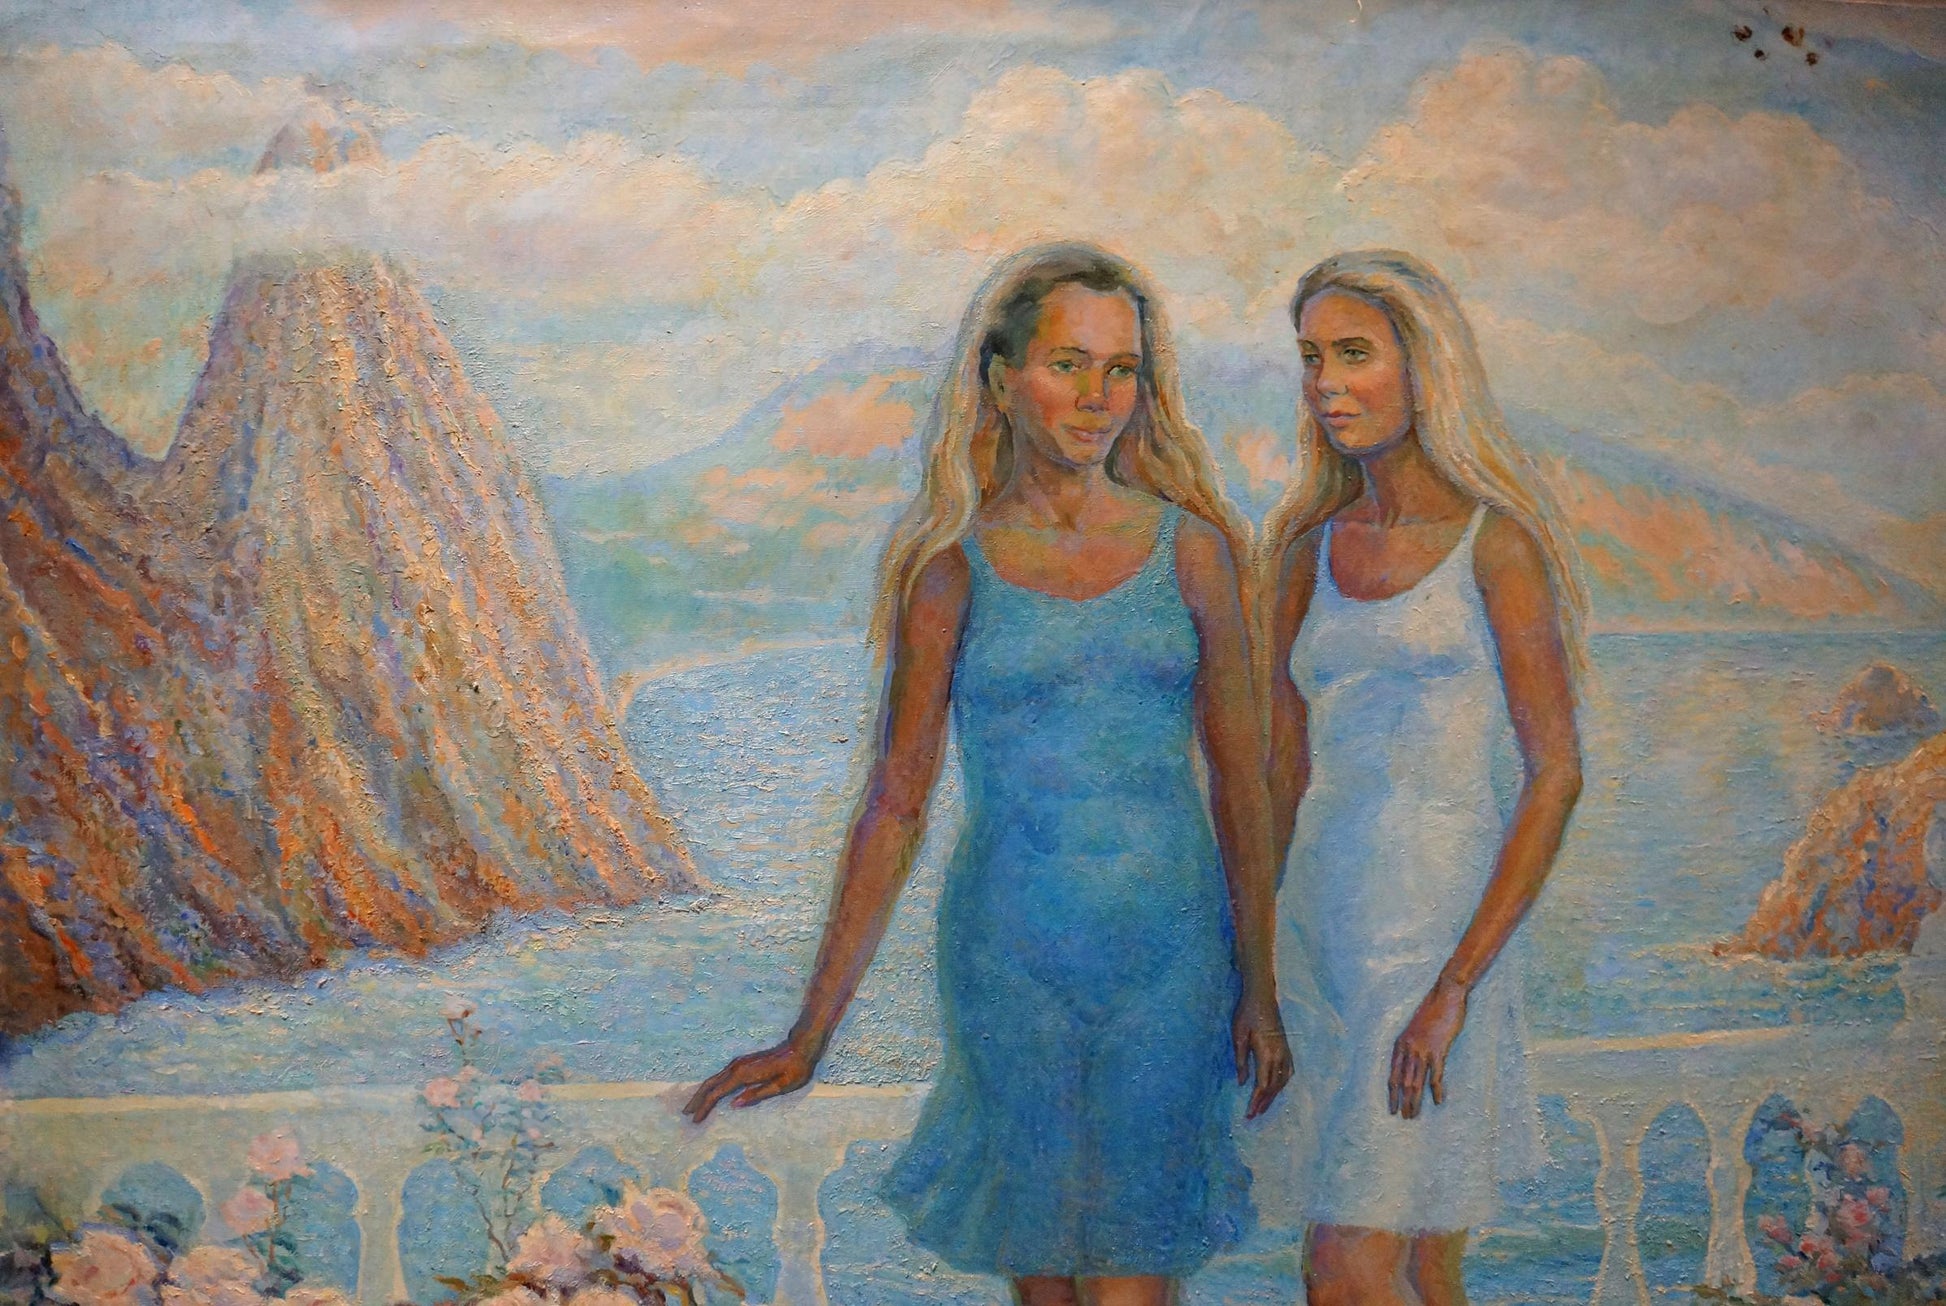 Girls at Sea depicted in oil by Odarka Anatoliivna Tytarenko